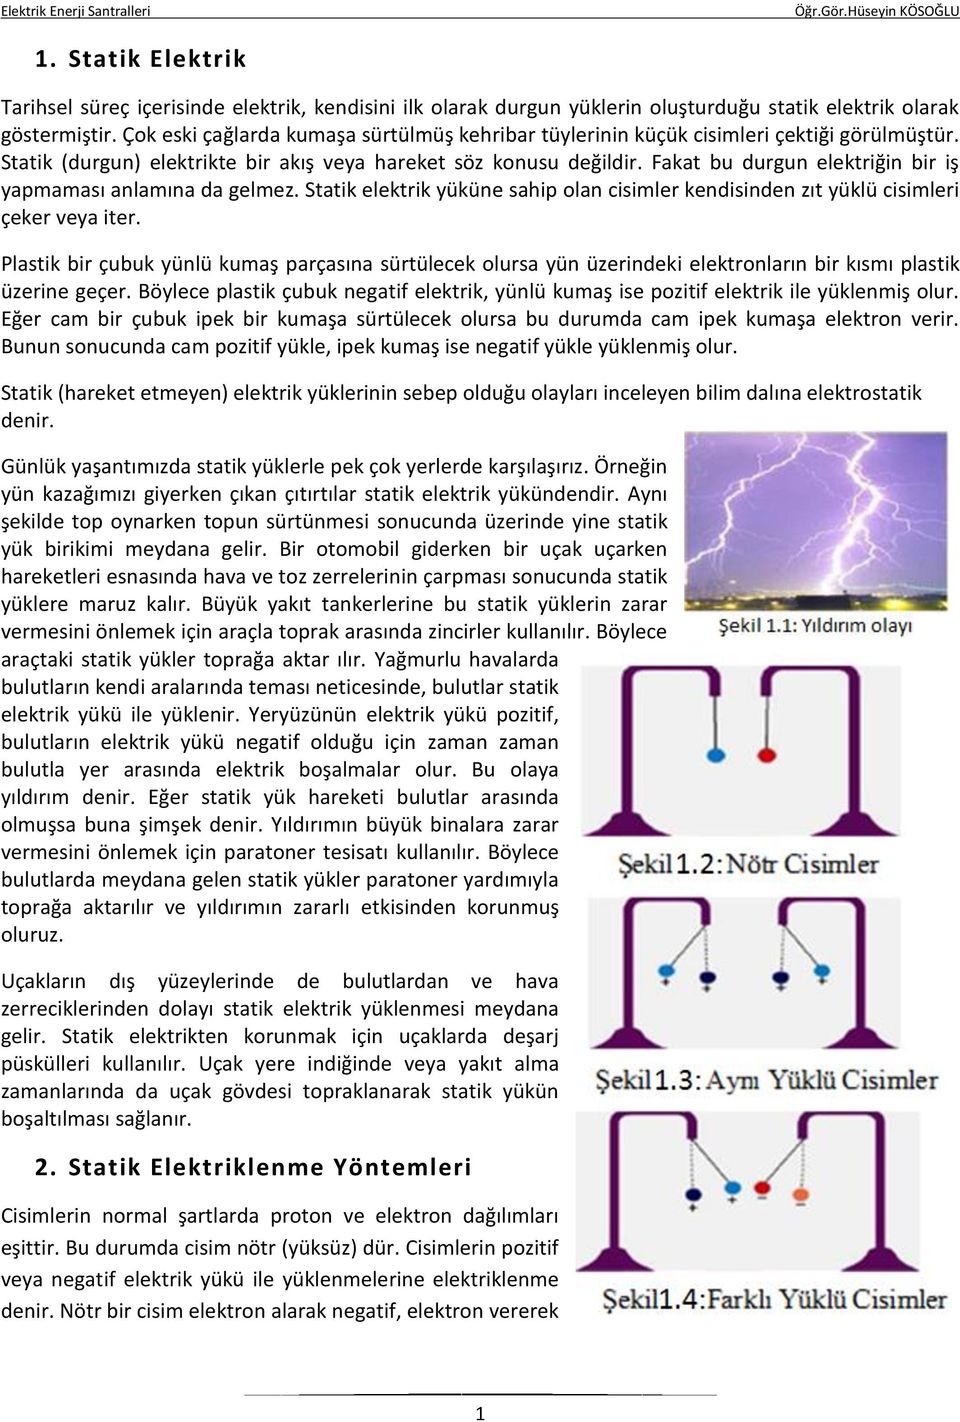 1. Statik Elektrik. 2. Statik Elektriklenme Yöntemleri - PDF Free Download